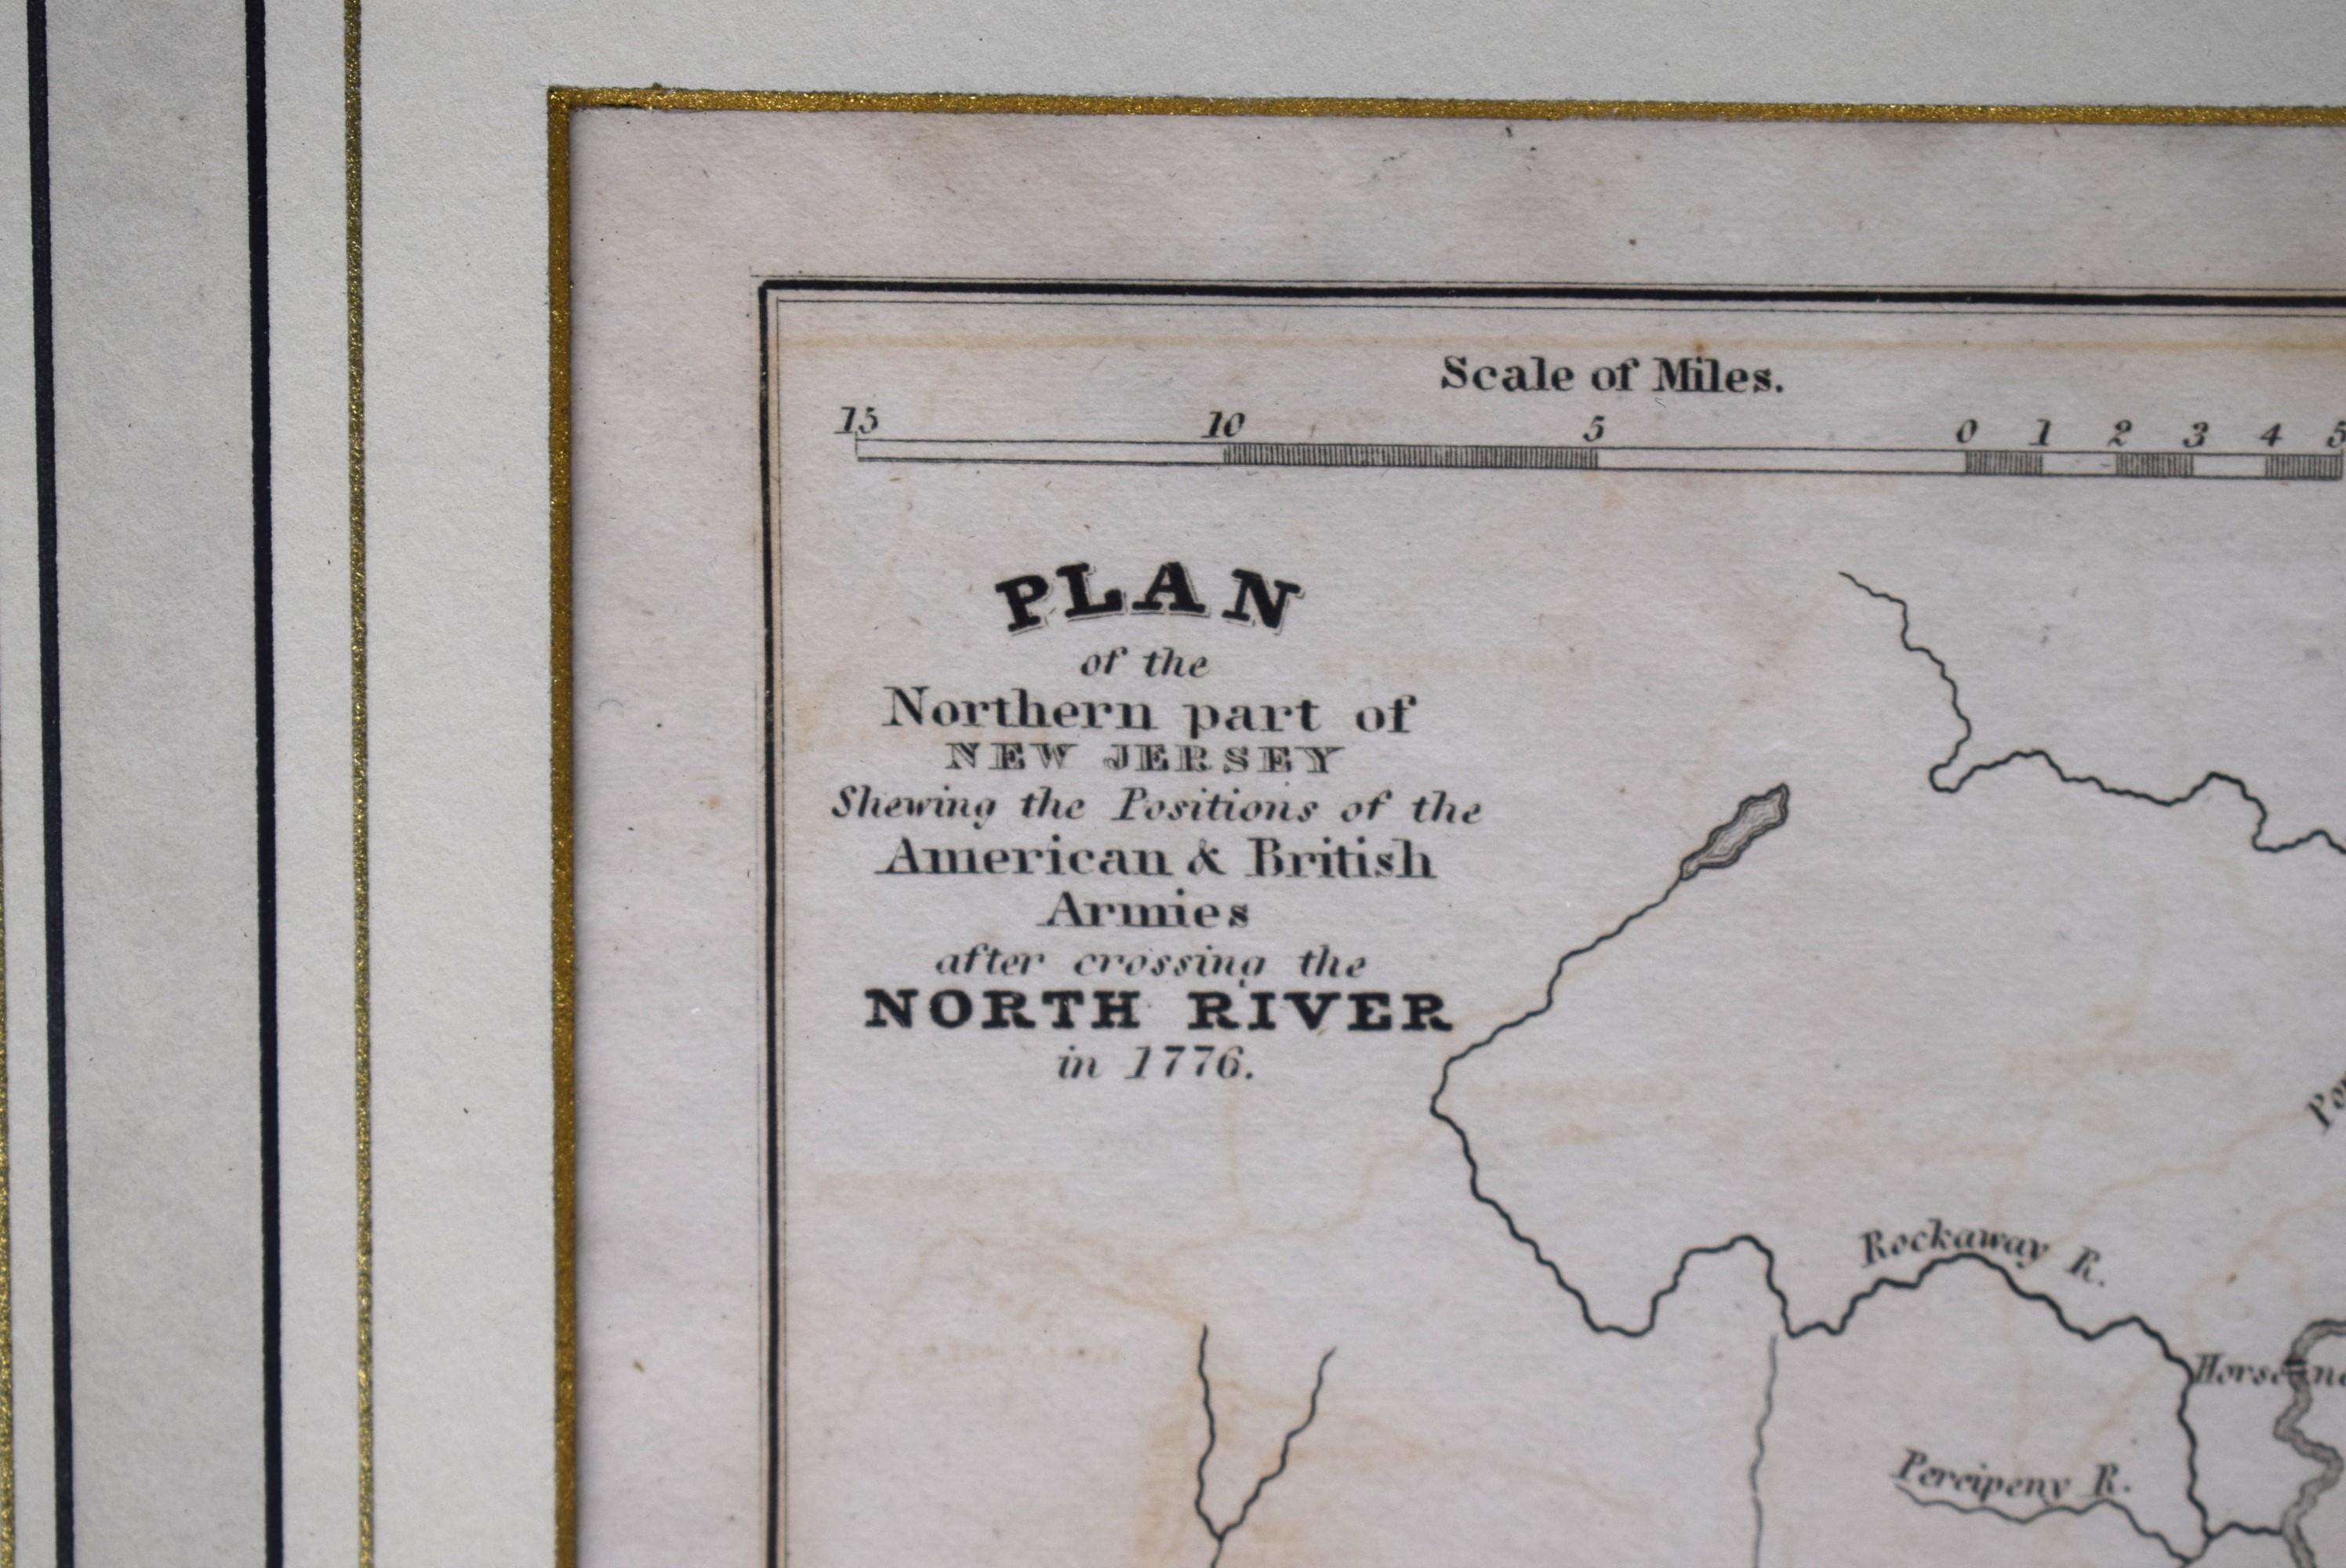 Nach der Überquerung des North River im Jahr 1776

Karte Sz: 9 7/8 